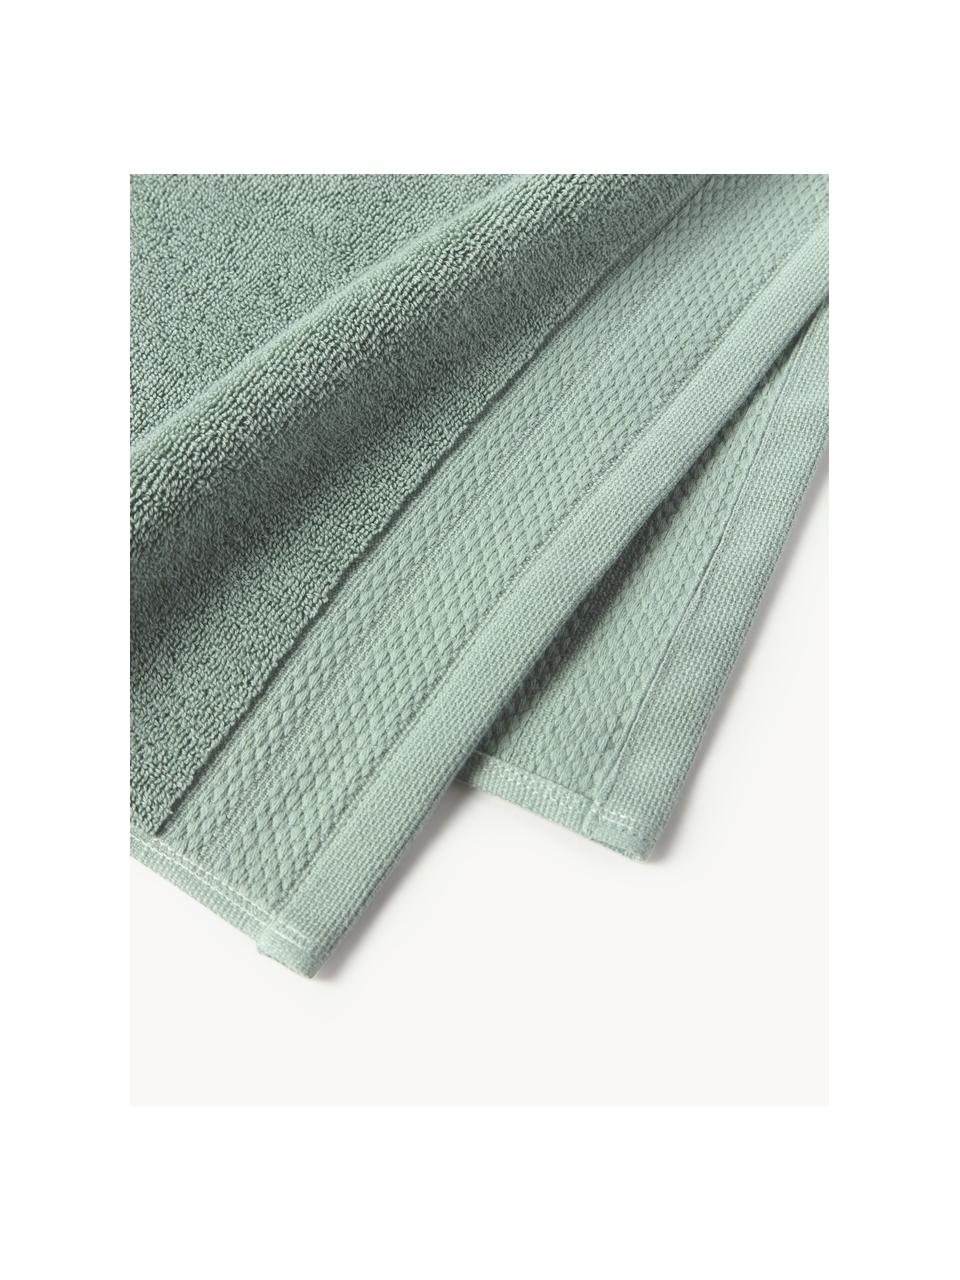 Ręcznik z bawełny organicznej Premium, różne rozmiary, Szałwiowy zielony, Ręcznik do rąk, S 50 x D 100 cm, 2 szt.